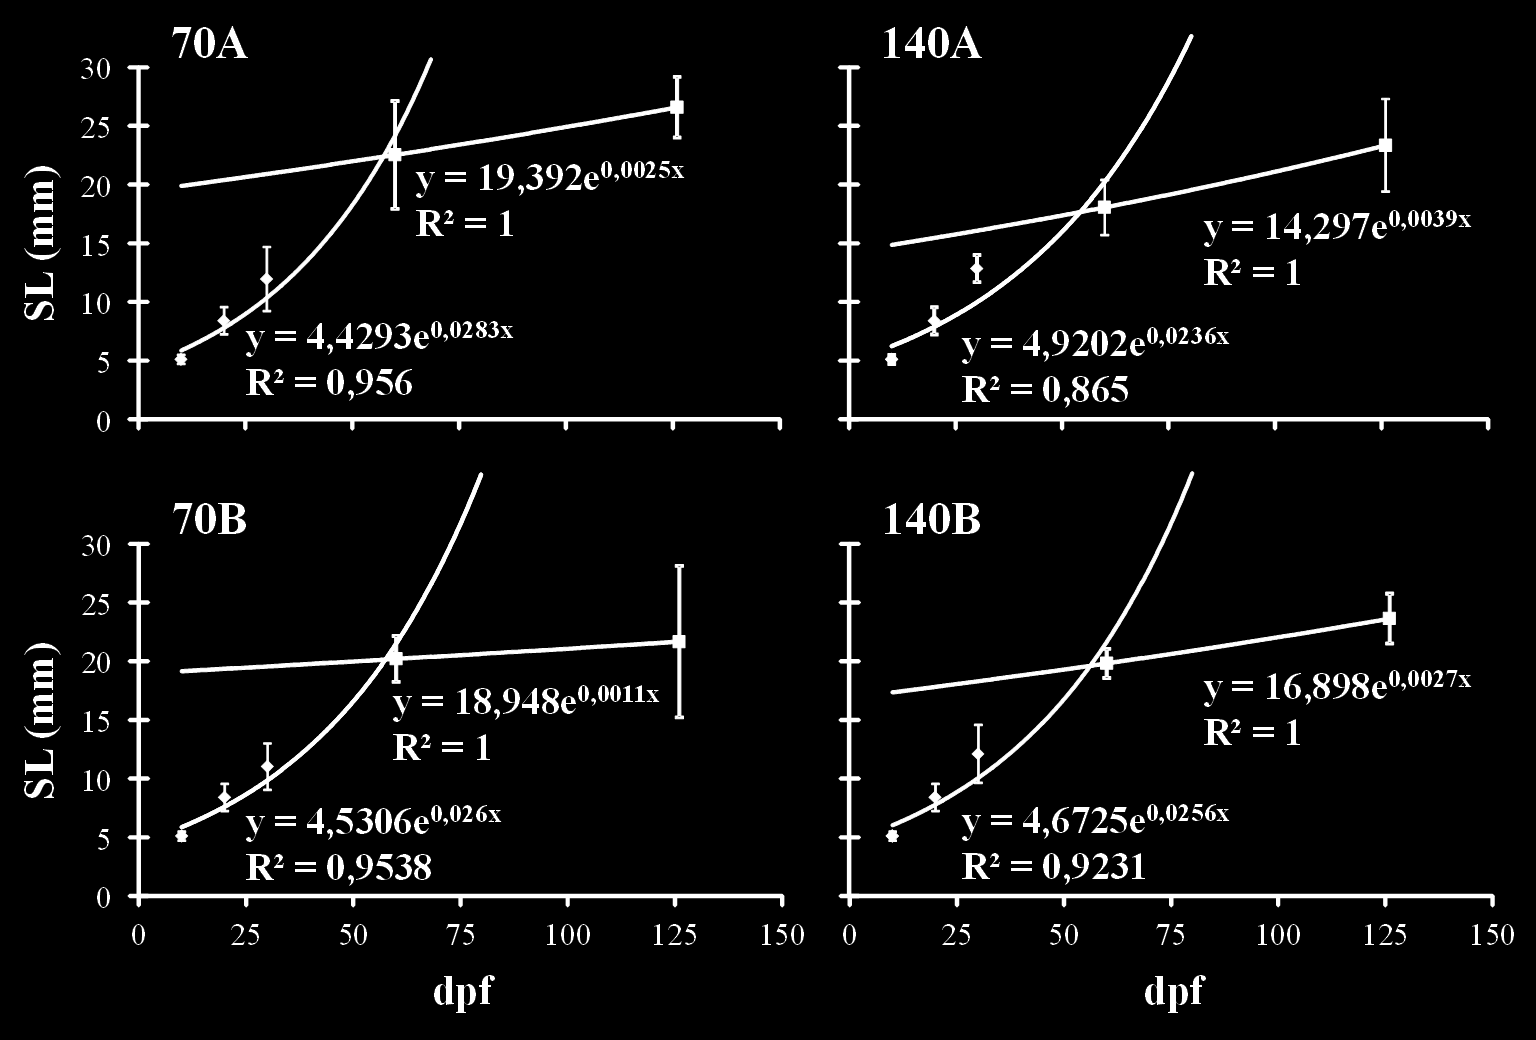 Εικόνα 4.3.1-1: Διαγράμματα του ρυθμού αύξησης στις διαφορετικές συνθήκες πυκνότητας (200 & 400, 70 & 140) που ελέγχθηκαν κατά τη διεξαγωγή των δύο πειραμάτων αυτής της μελέτης.